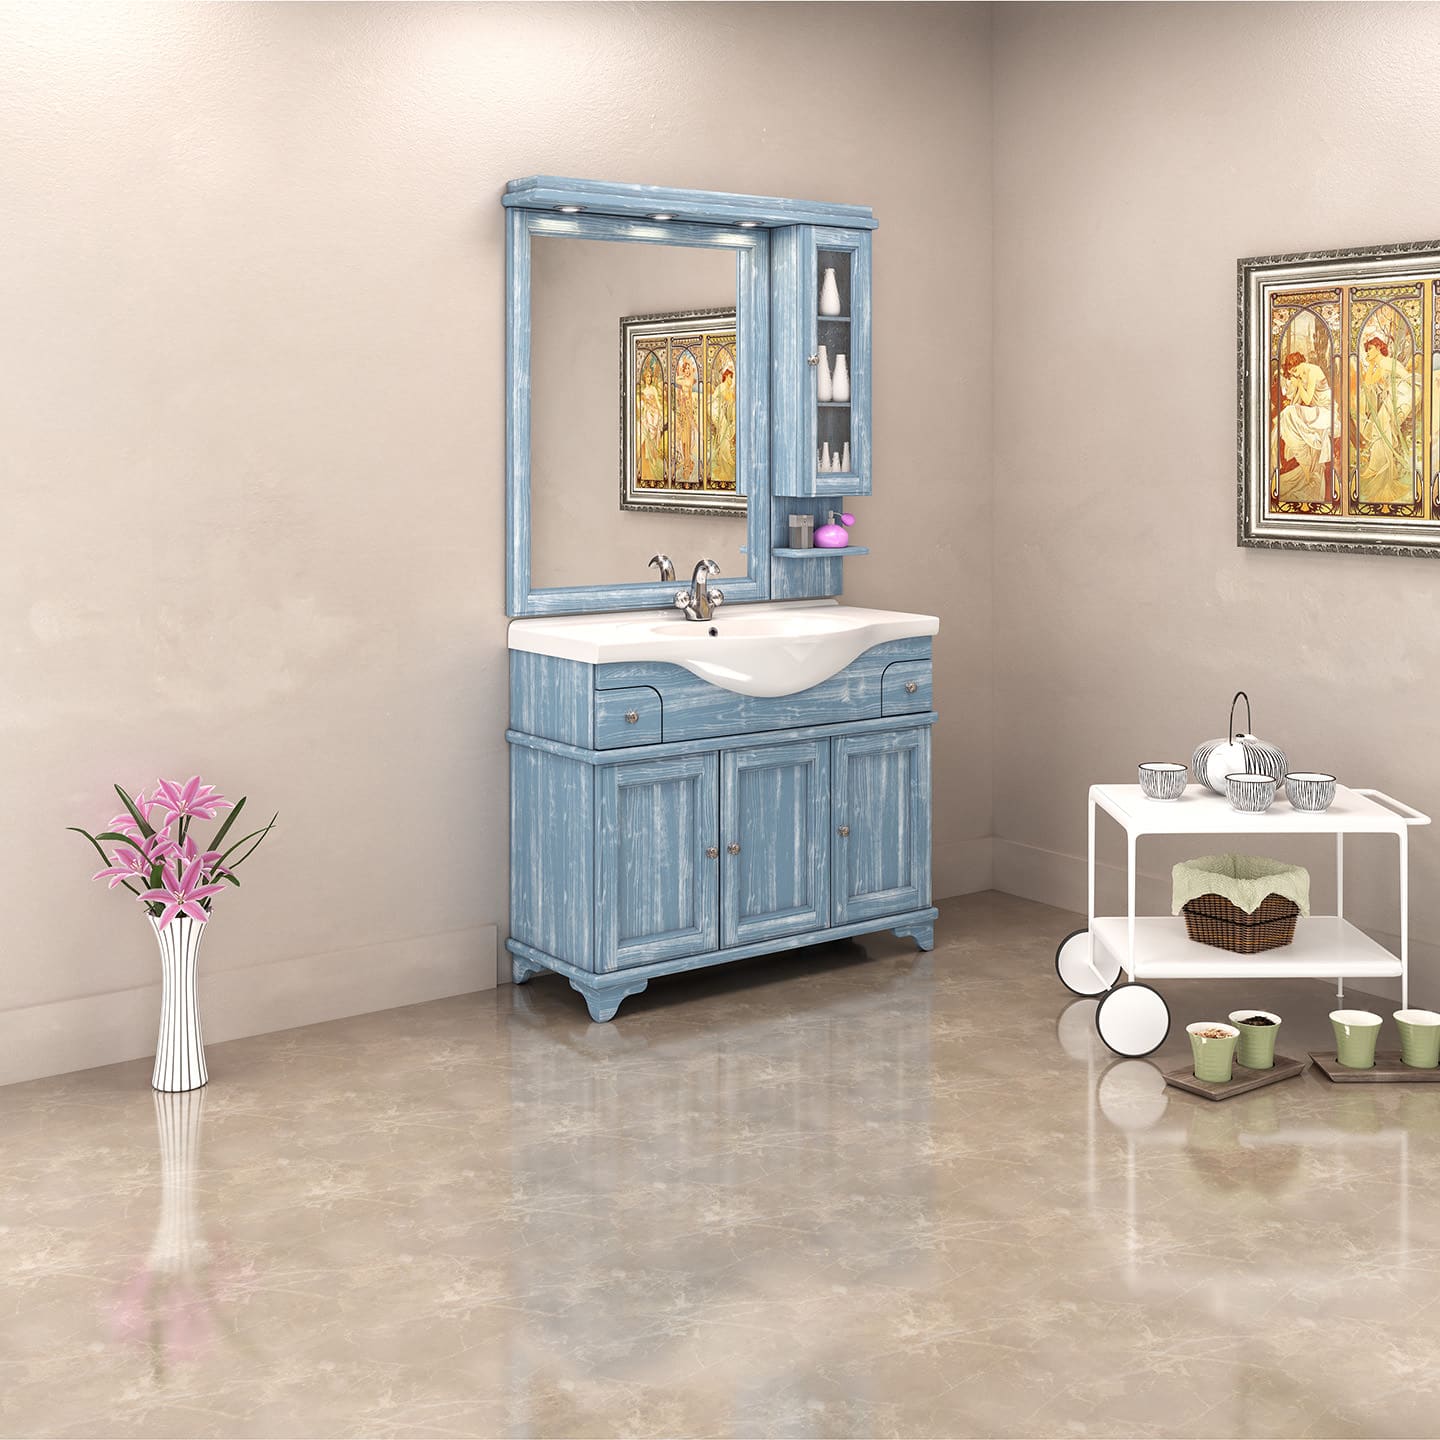 KALIANOS 105 – Zebis – Bath furniture